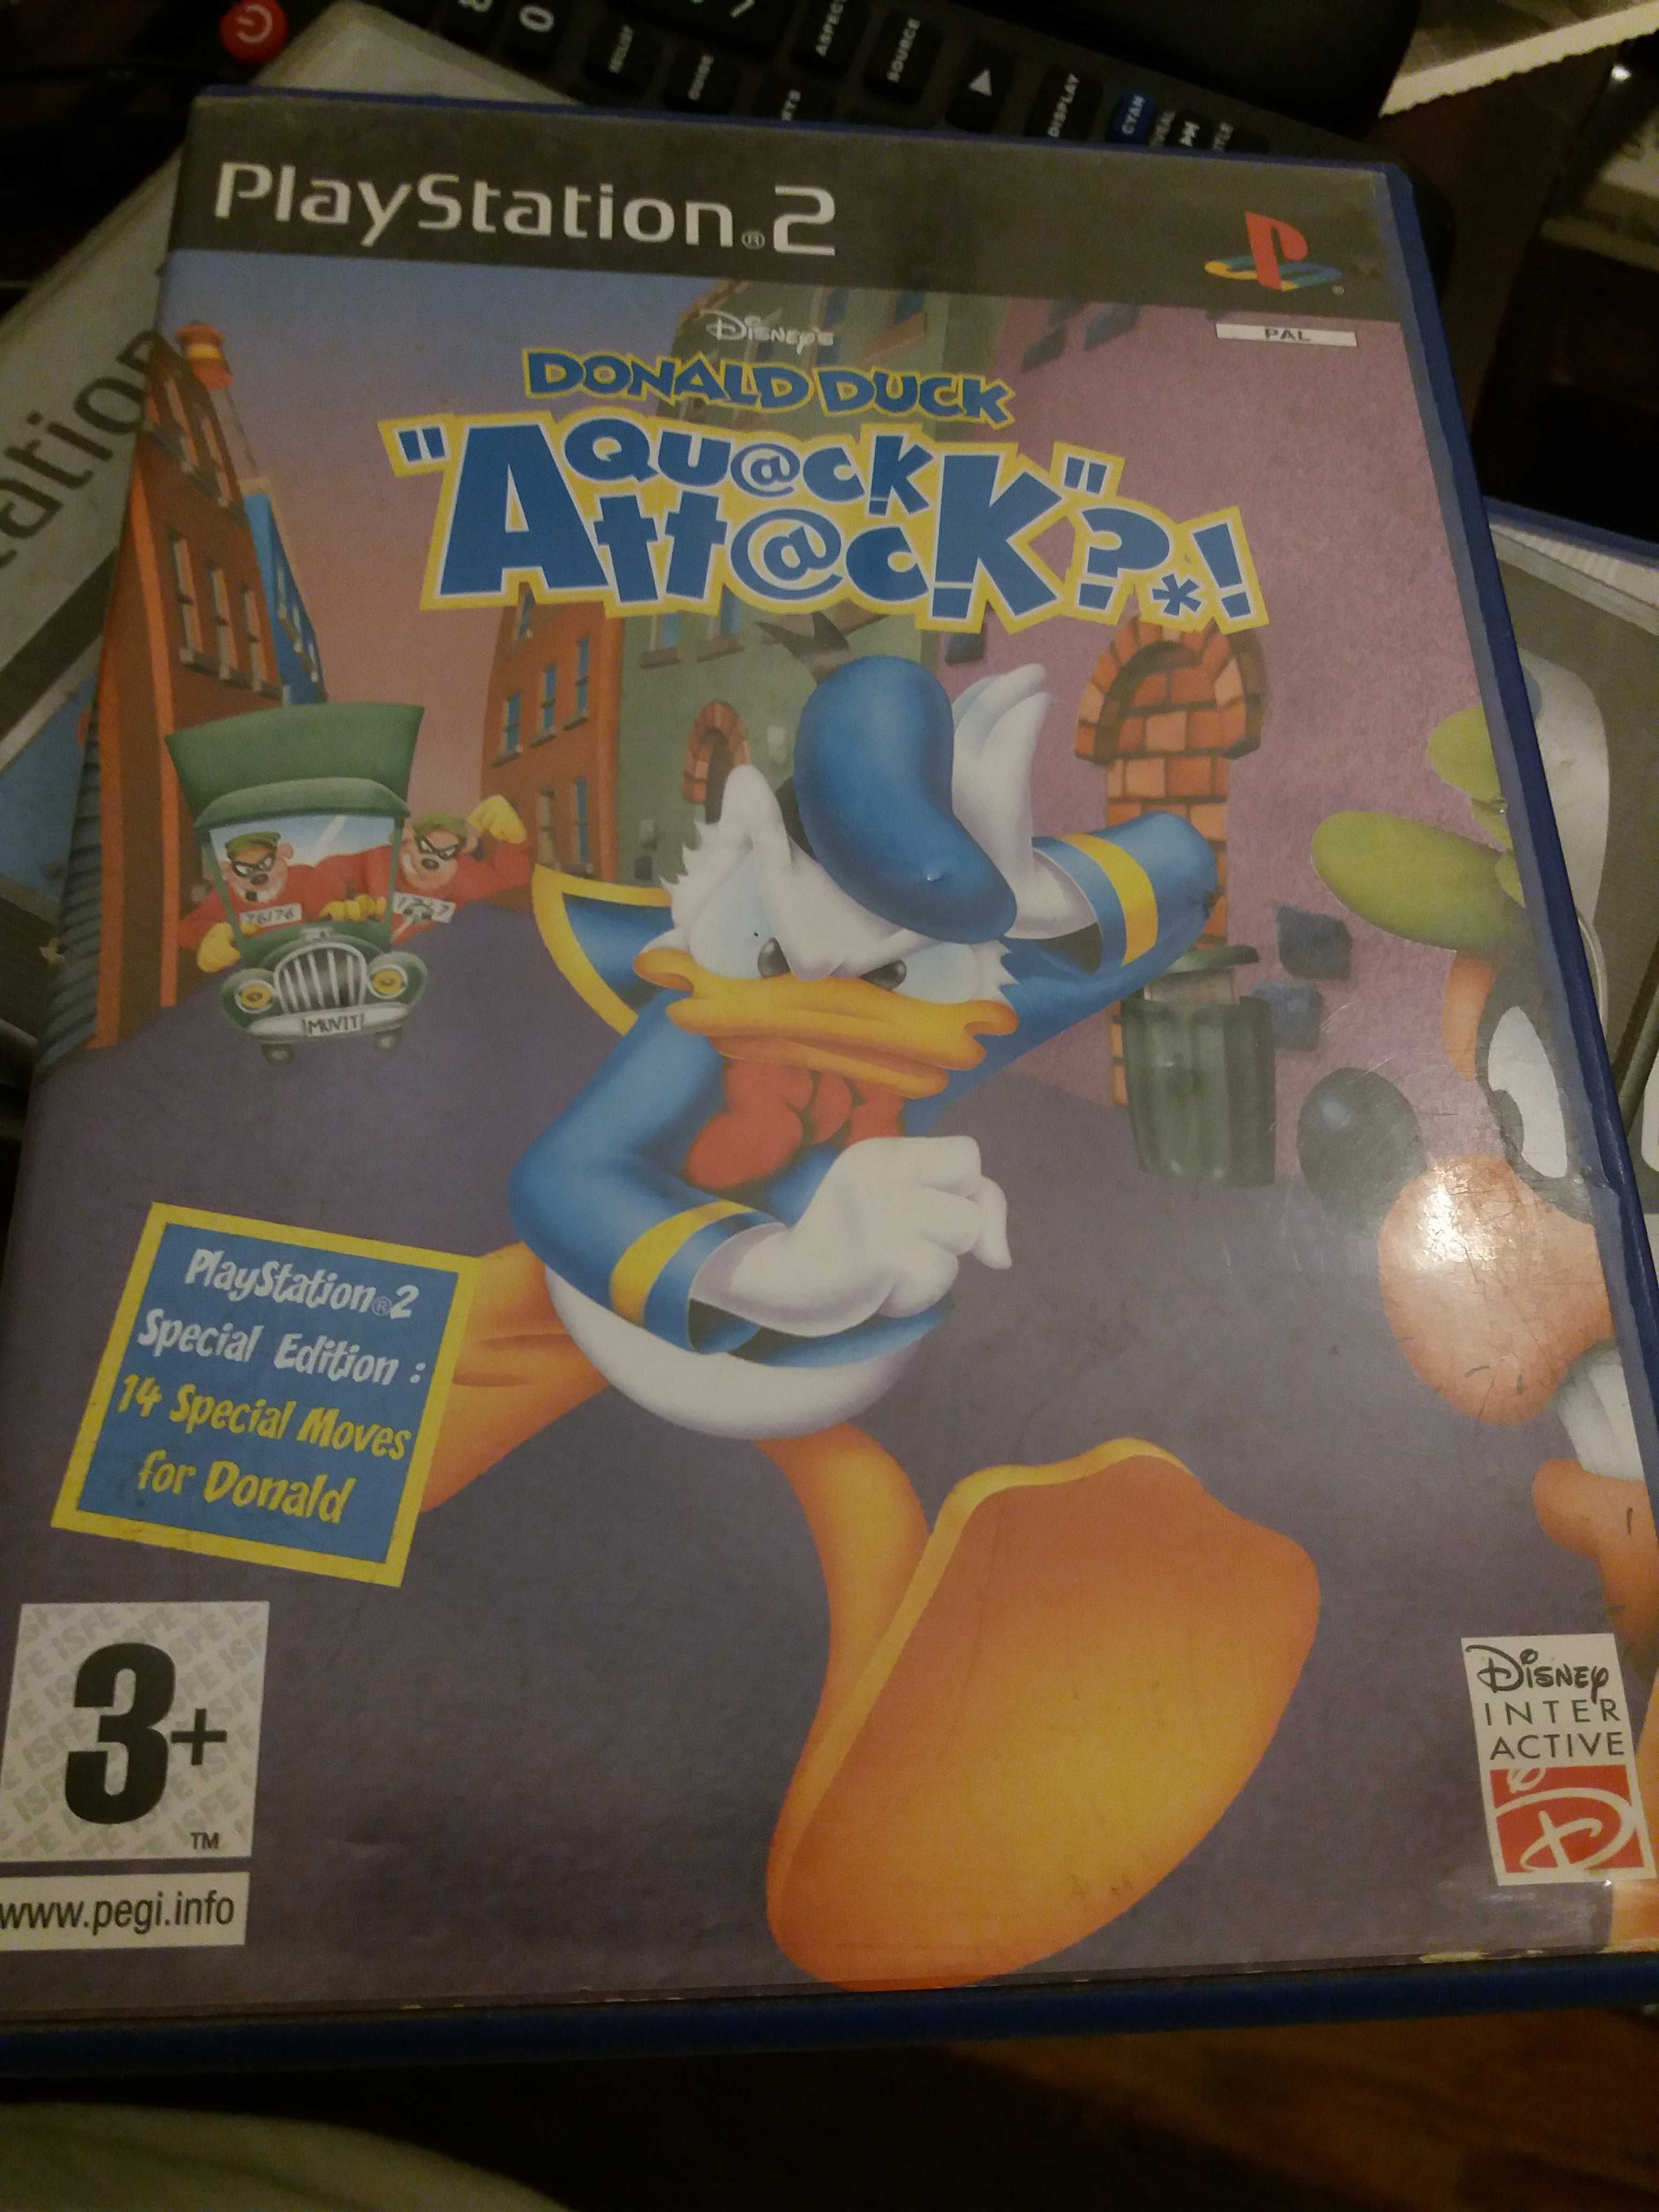 Play station - Sims2 Animais de estimacao e Donald Duck